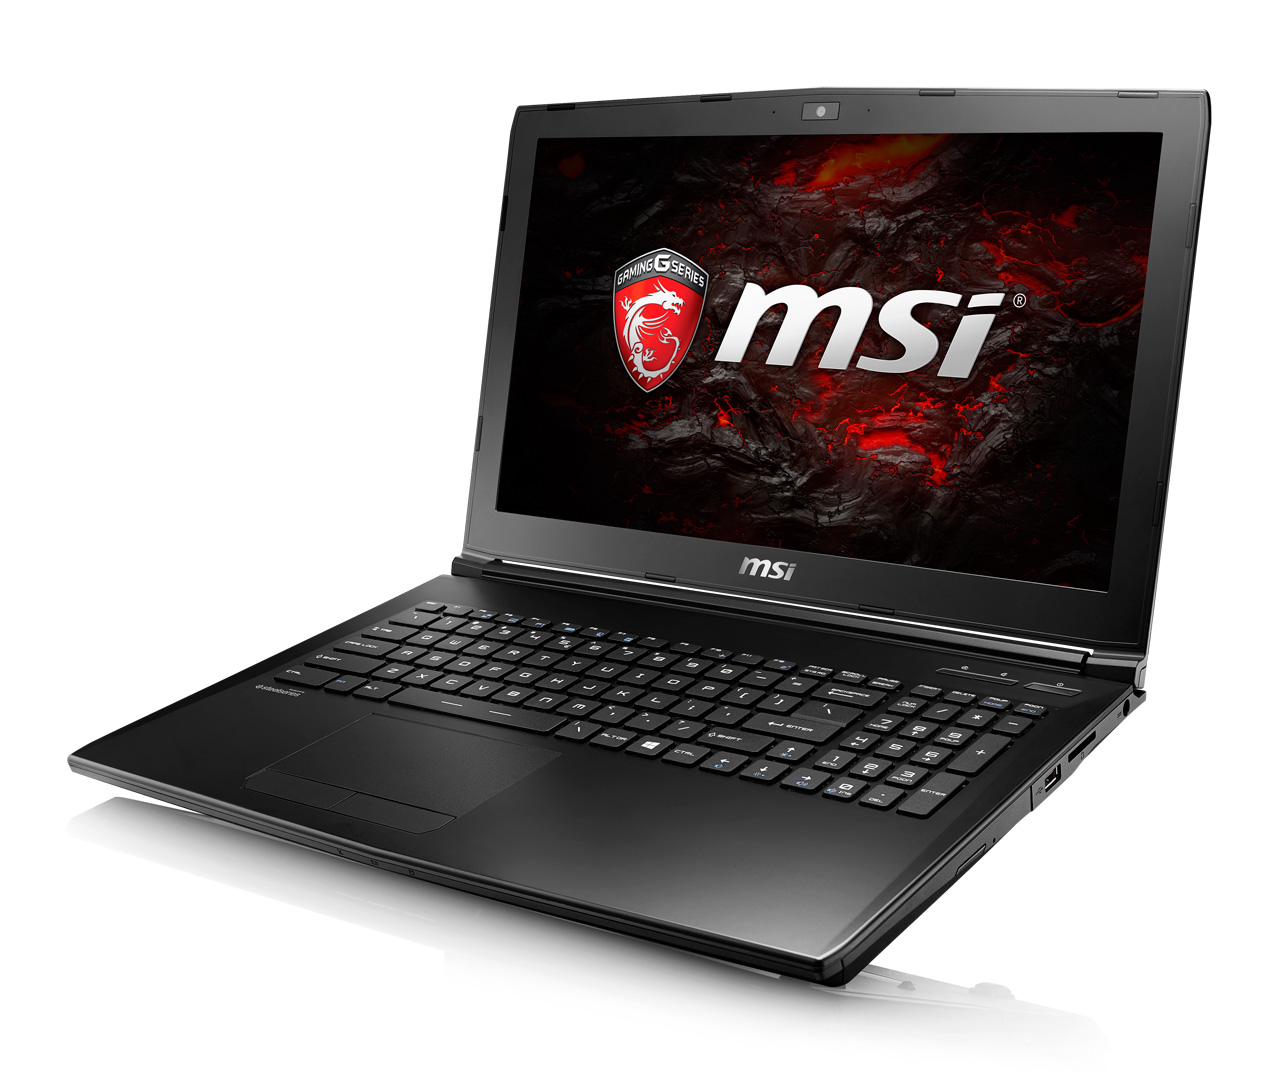 [2017-06-20] MSI, GTX 1050 게이밍 노트북 300대 한정 특가판매 “사은품도 팍팍”.jpg